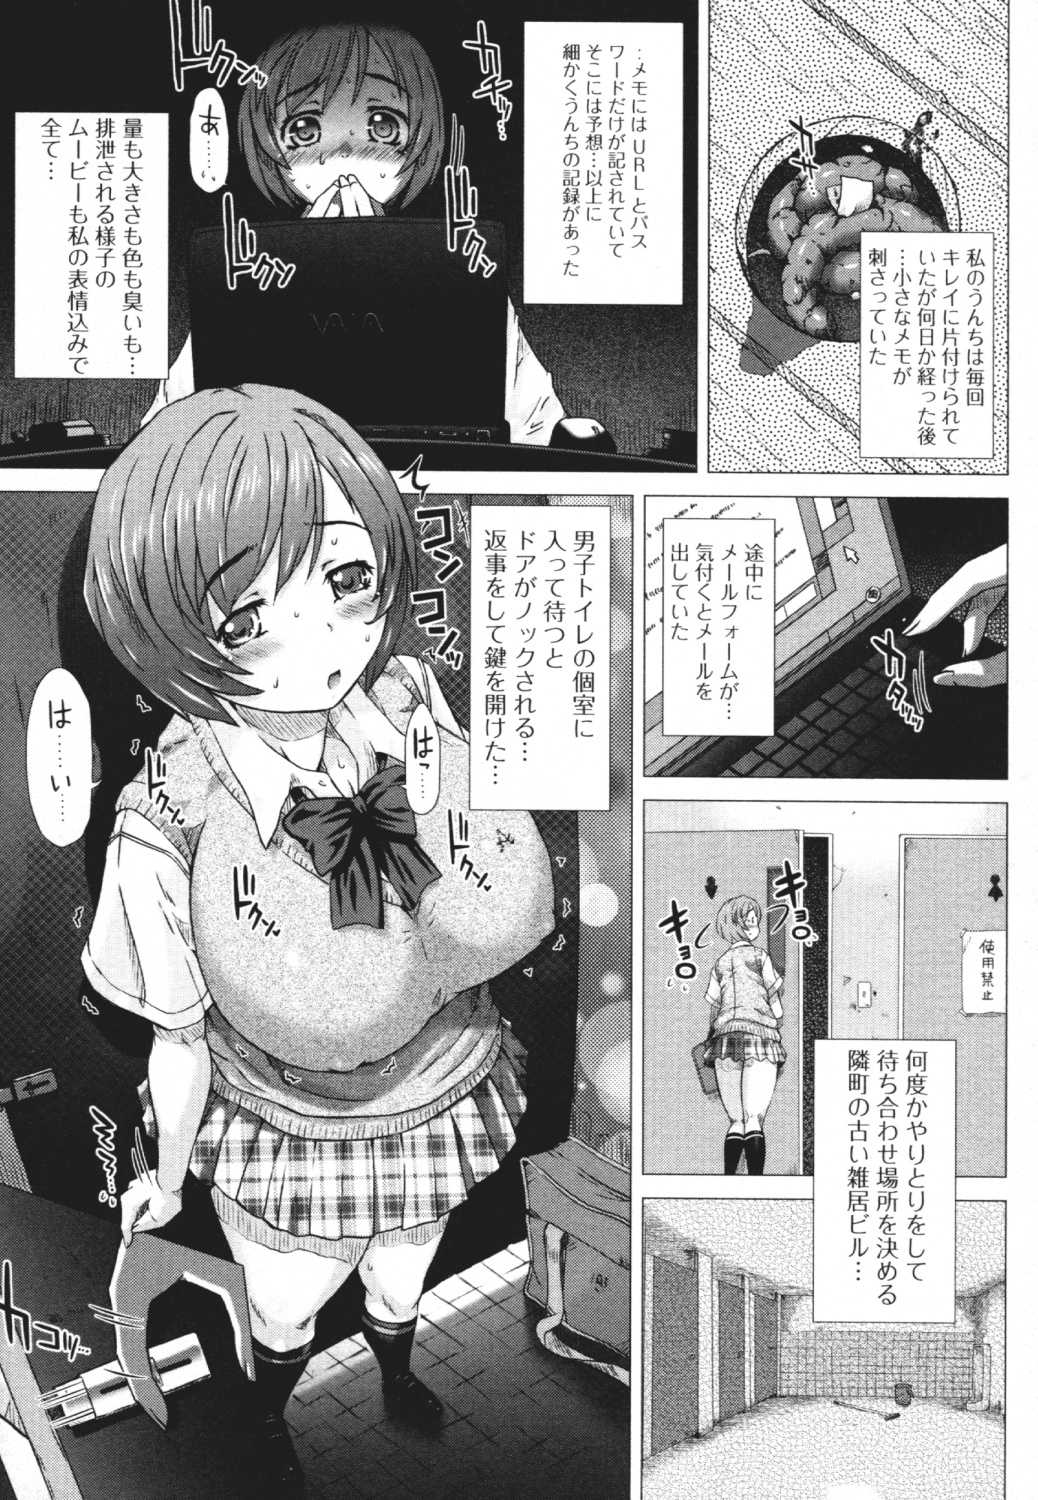 [Anthology] Do Not Peep 4 (Nozoite wa Ikenai 4) [アンソロジー] 覗いてはいけない 4